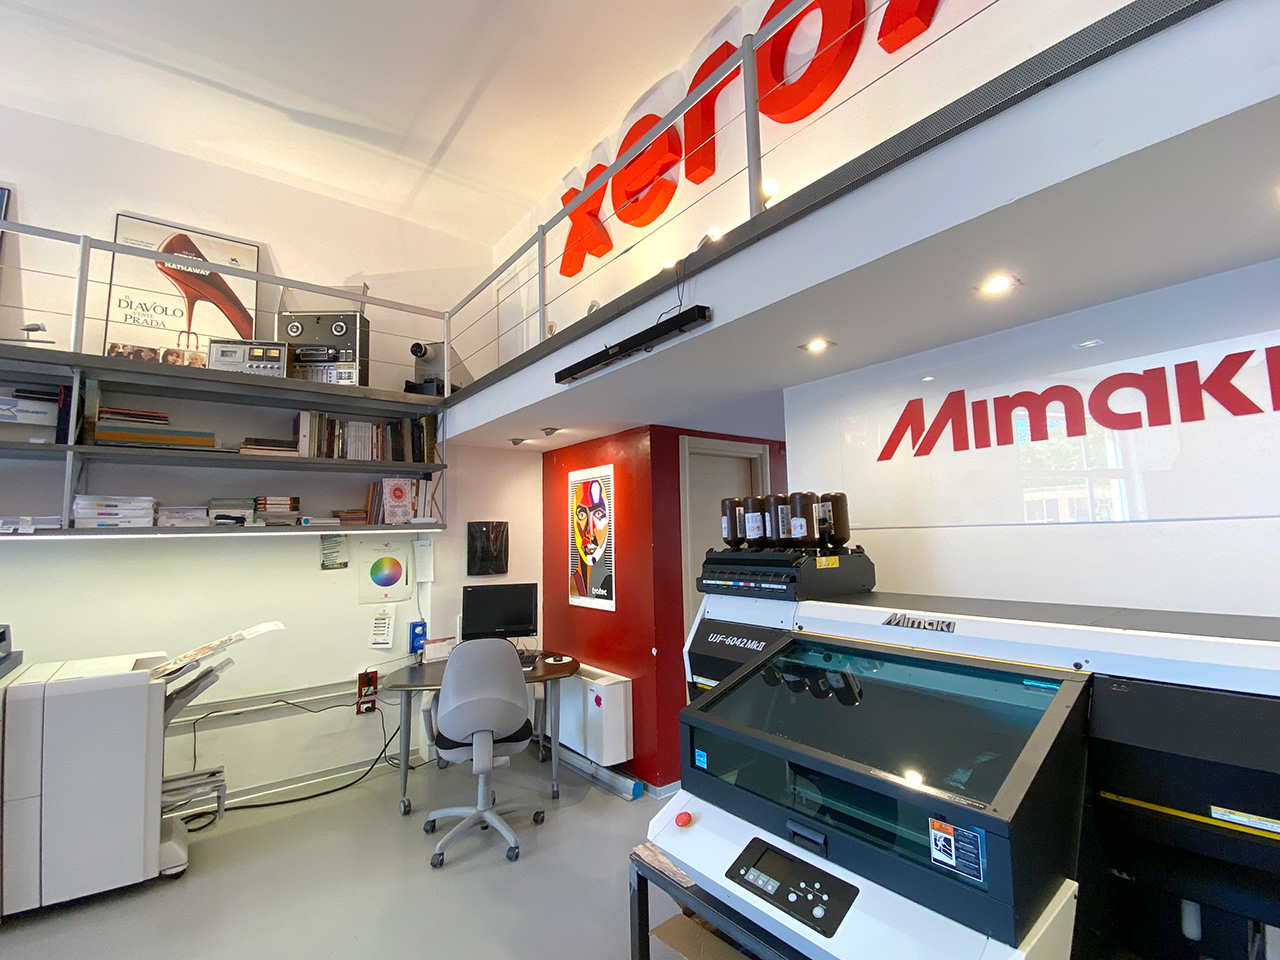 ShowRoom Sale&Service Informatica - Partner Xerox, Mimaki e Trotec